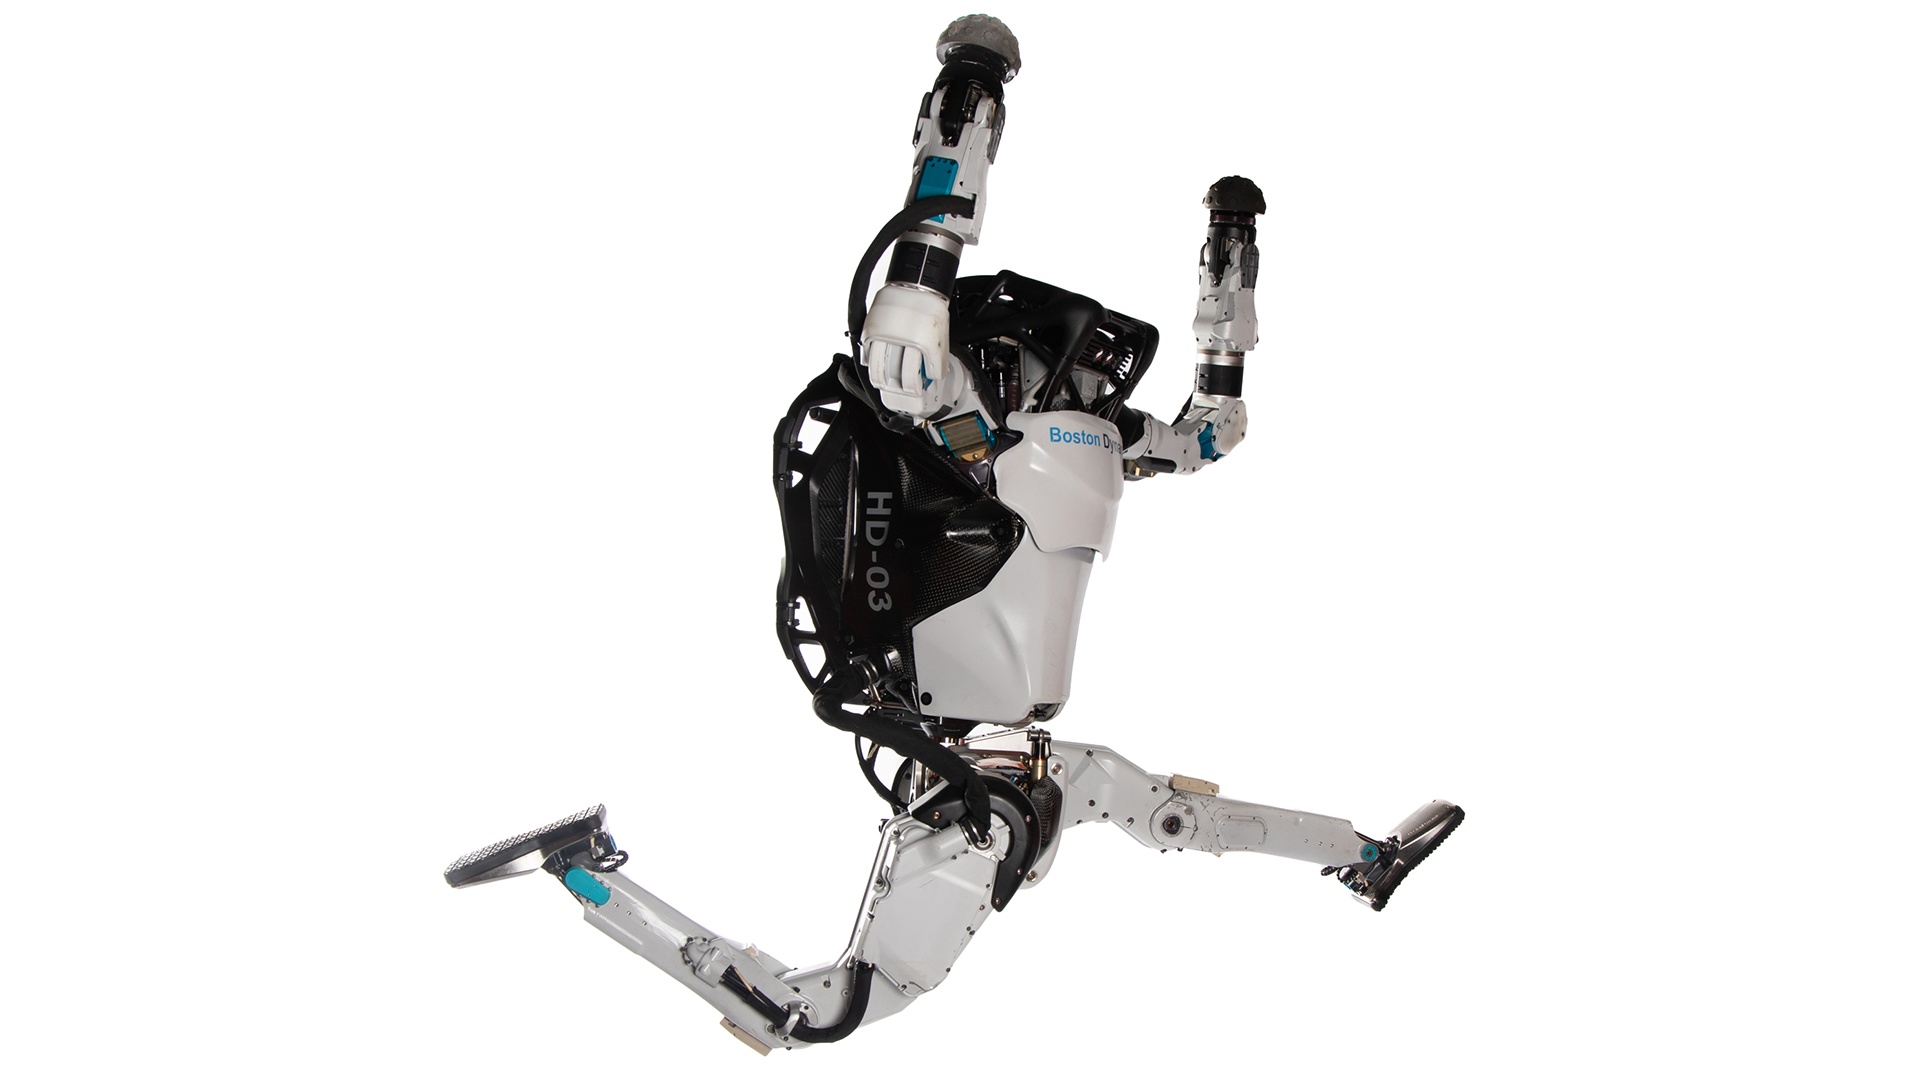 Roboter macht Parkour - Boston Dynamics zeigt Atlas bei wenig erfolgreicher Akrobatik